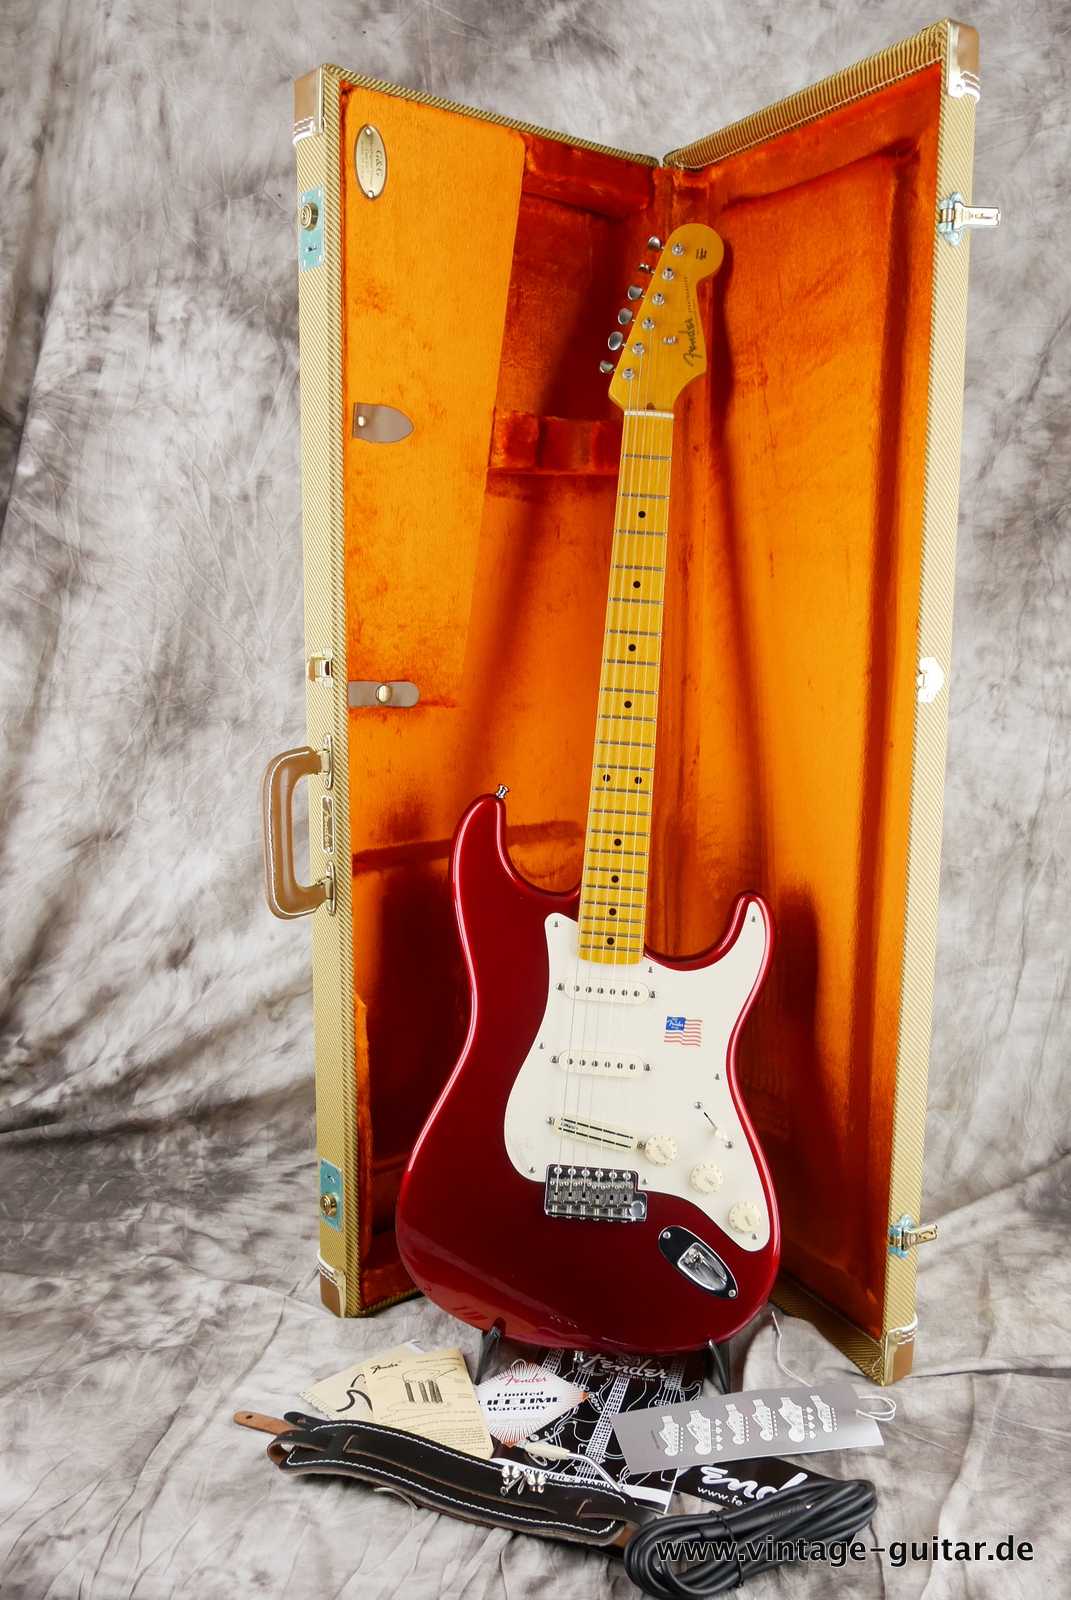 img/vintage/5125/Fender_Stratocaster_Vintage_Hot_Rod_candy_apple_red_USA_2010-014.JPG